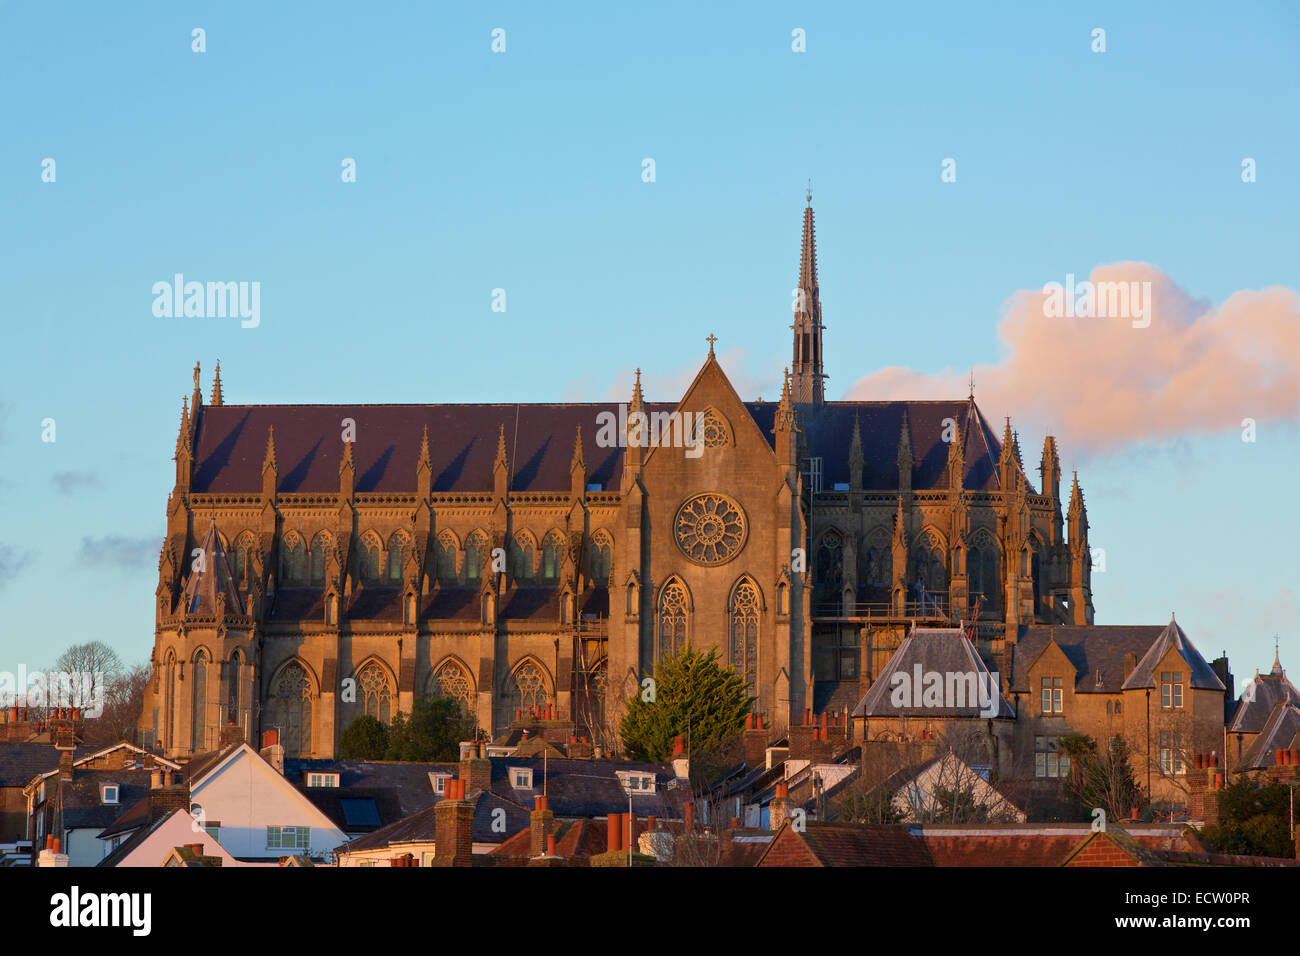 Arundel Cathedral. Profil du sud de l'édifice historique. Fond de Ciel bleu avec des capacités éclairées par le soleil couchant. Banque D'Images